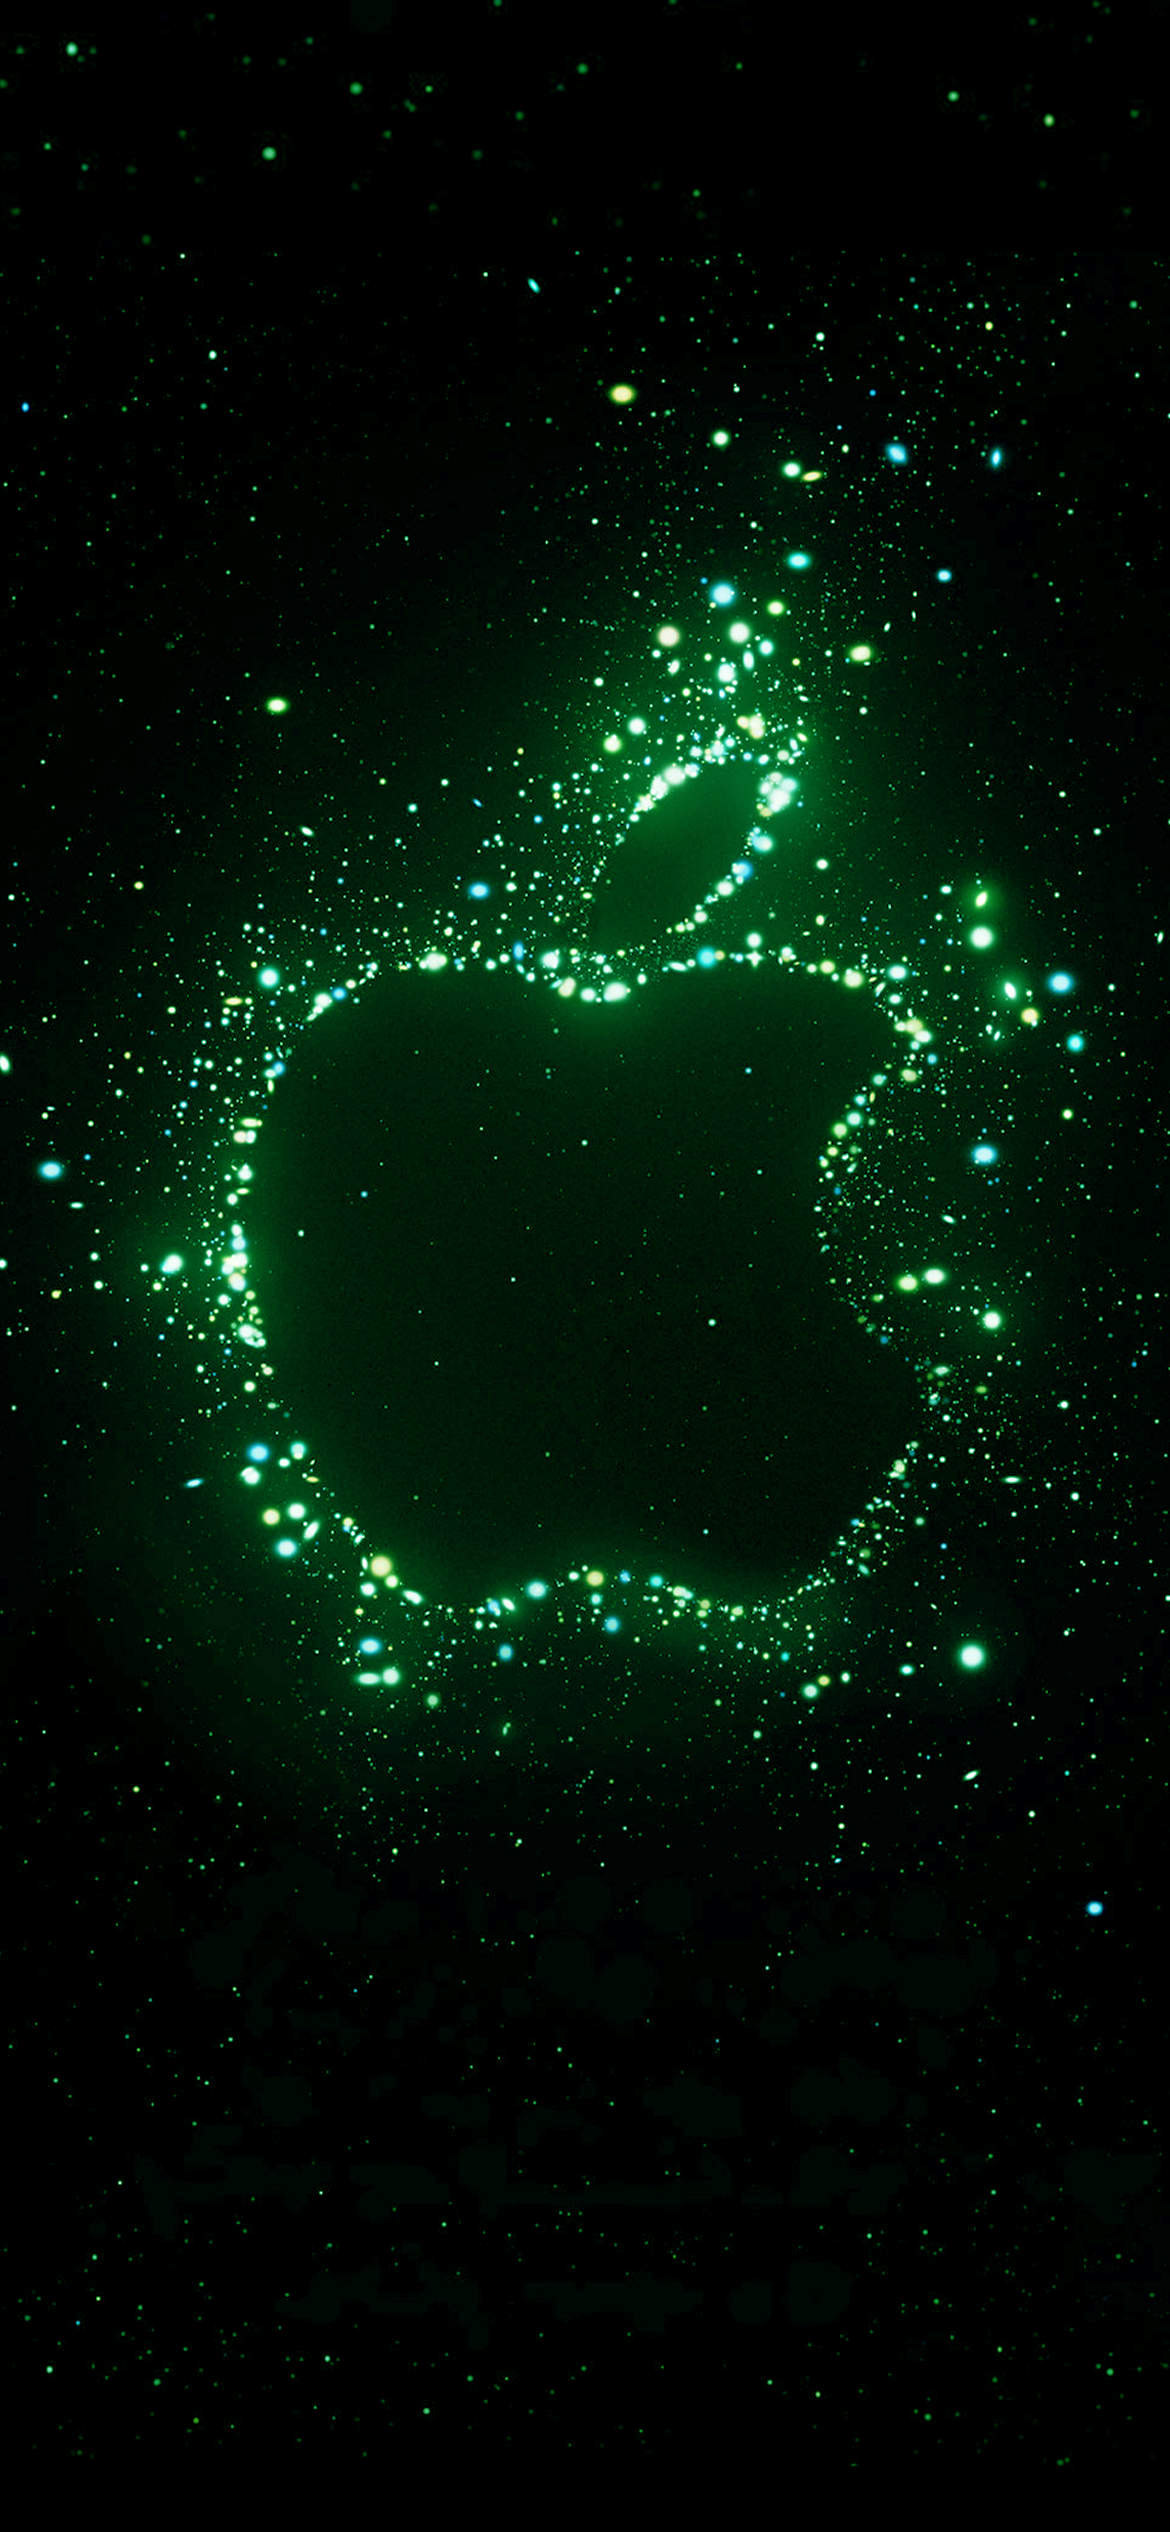 70,445 Green Apple Wallpaper Images, Stock Photos & Vectors | Shutterstock